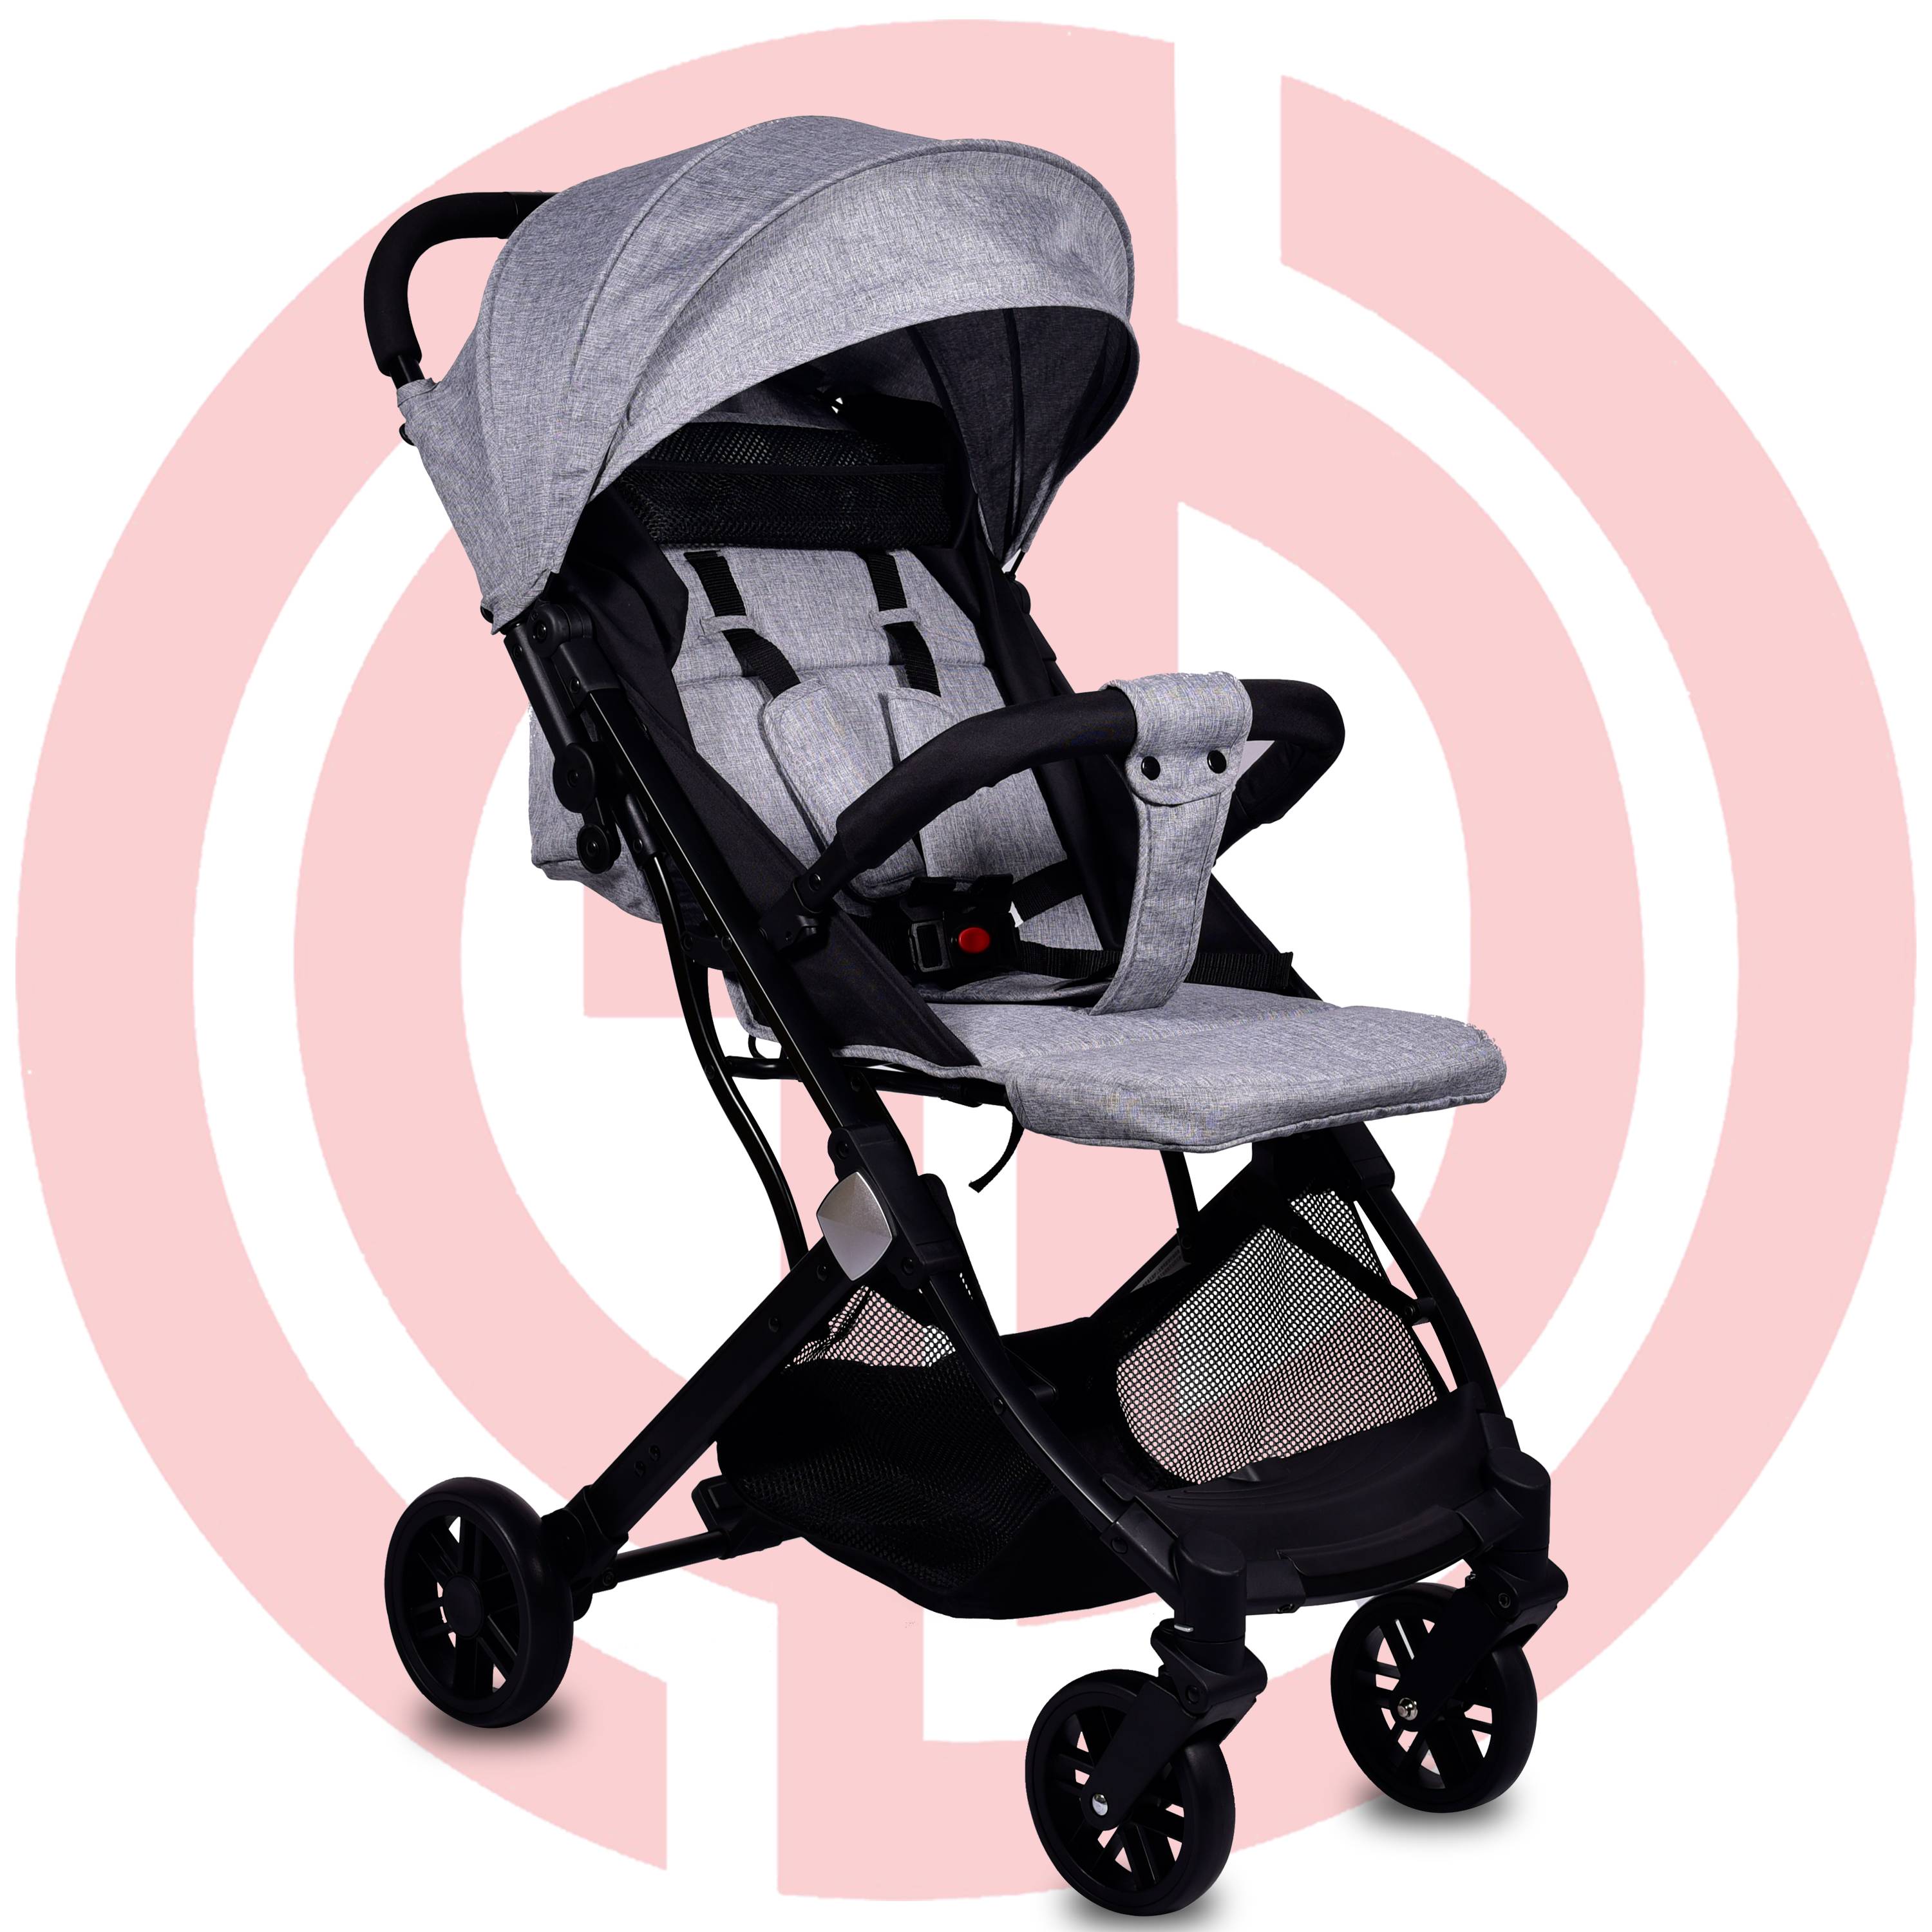 GD-KB-S002： Baby stroller, light stroller, stroller for baby, comfartable strolller for baby, safe baby stroller Featured Image